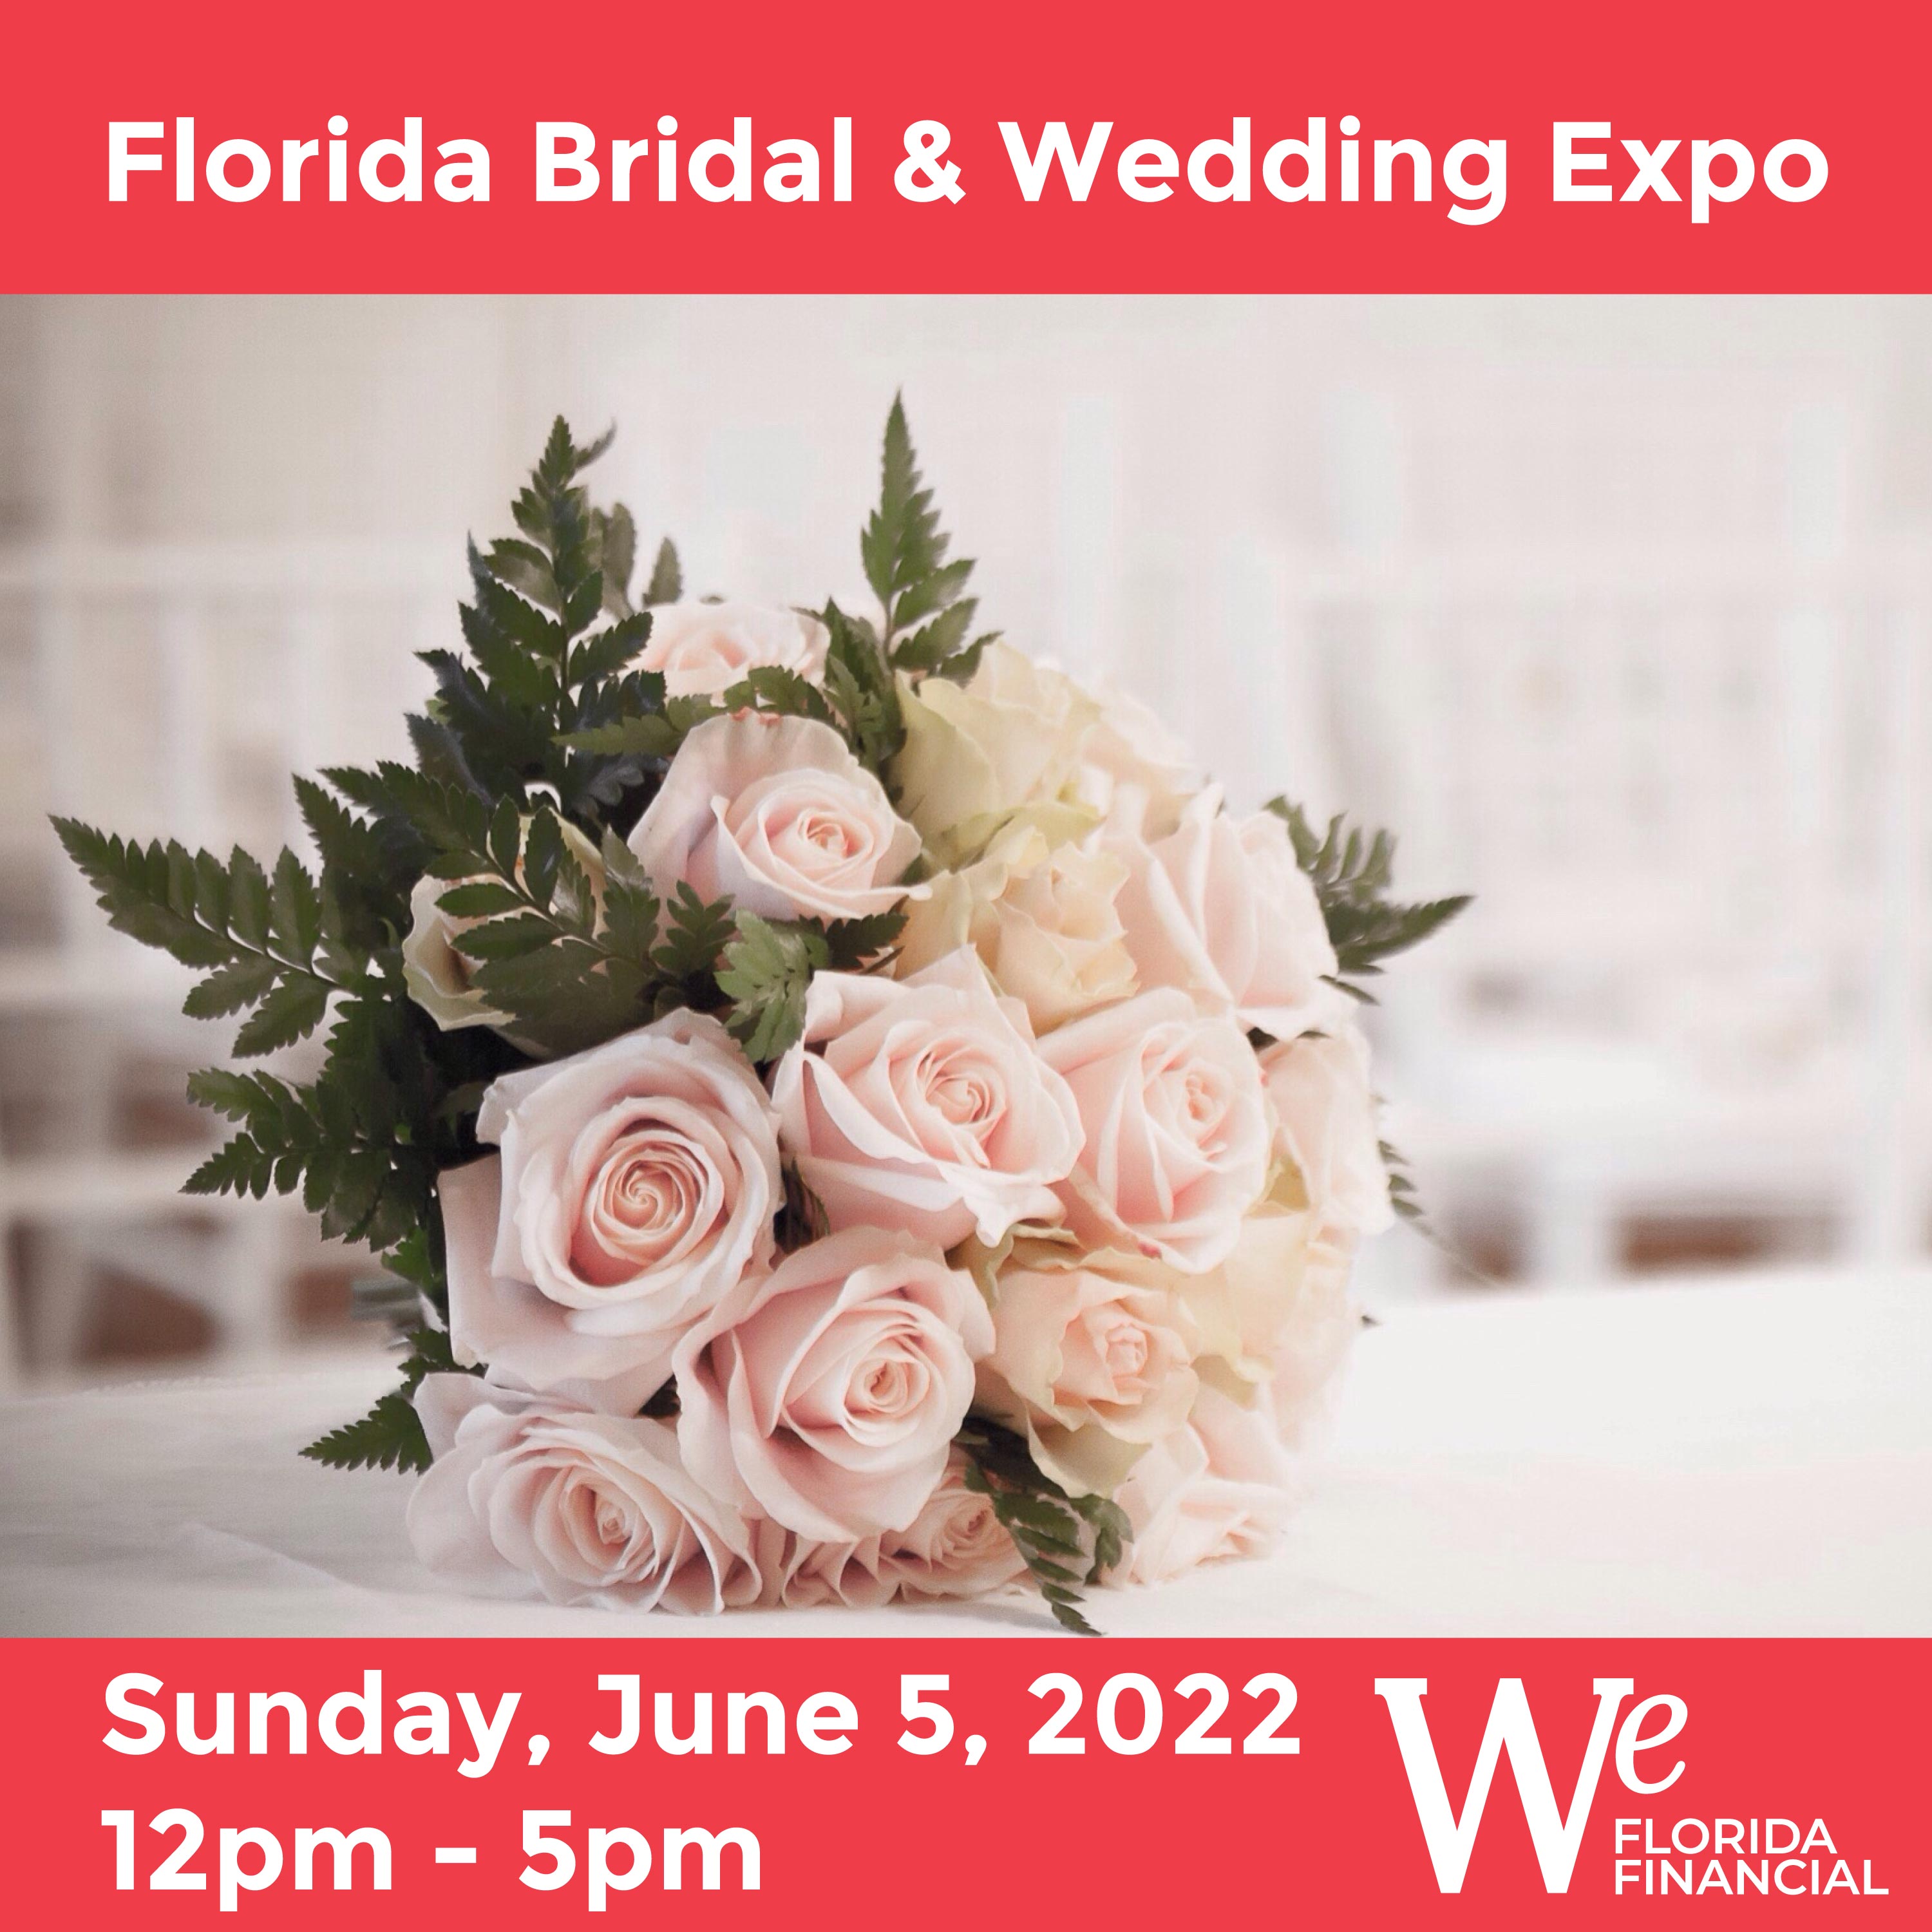 Florida Bridal & Wedding Expo June 5, 2022 Sunday 12 pm - 5 pm